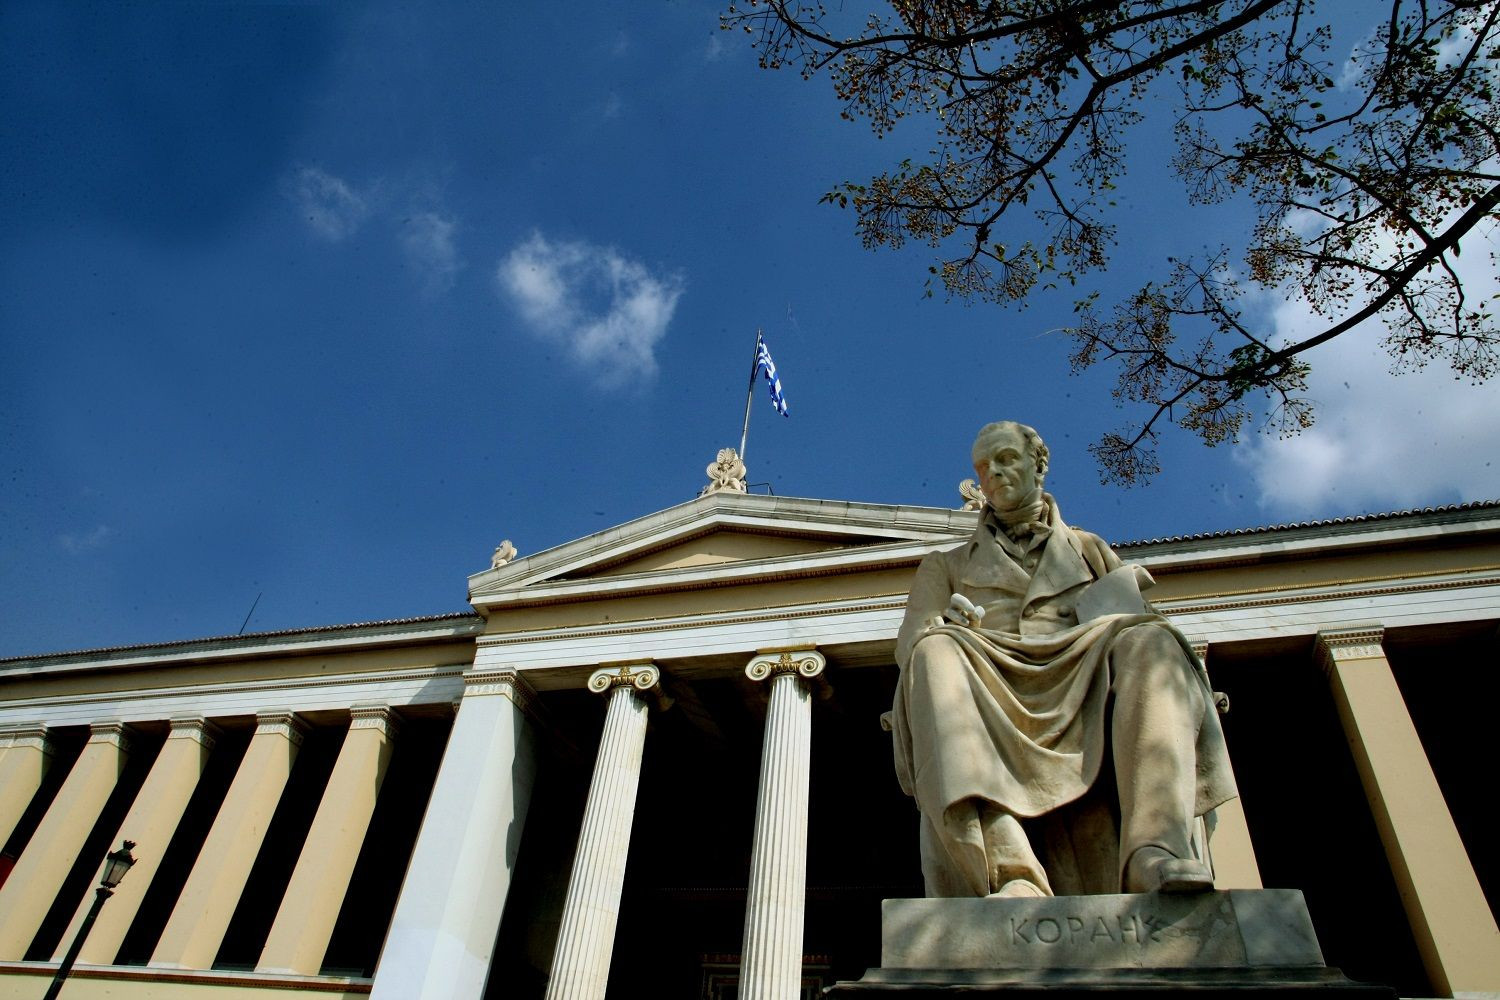 Δεκαέξι Έλληνες μεταξύ των ερευνητών με τη σημαντικότερη επιρροή παγκοσμίως